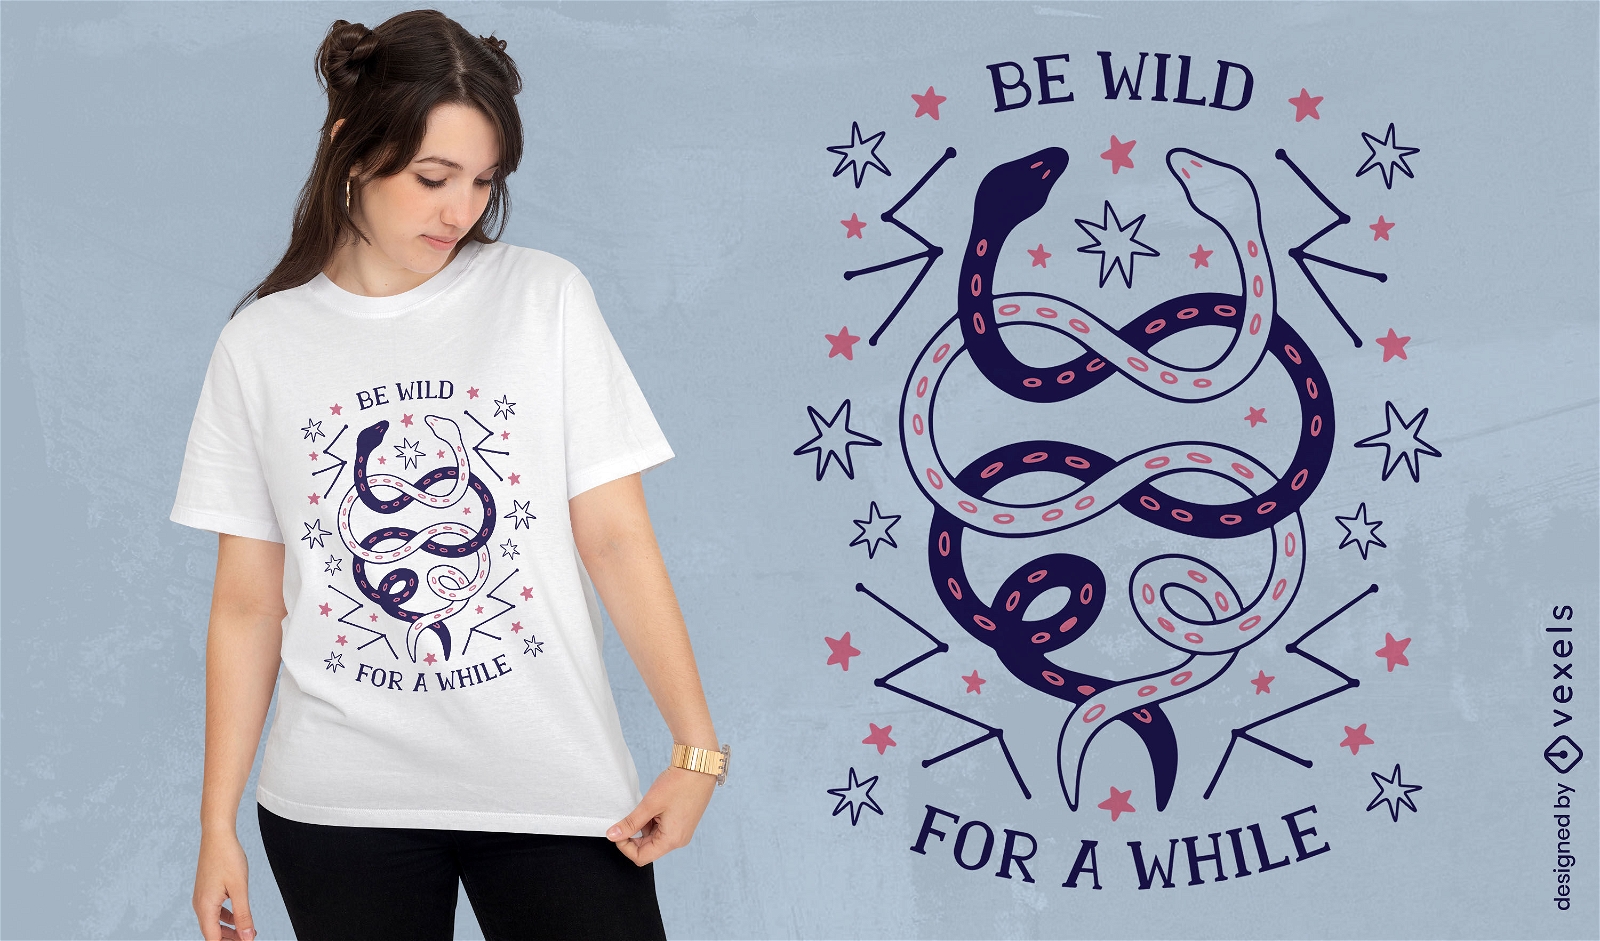 Dise?o de camiseta con cita salvaje de serpientes esot?ricas